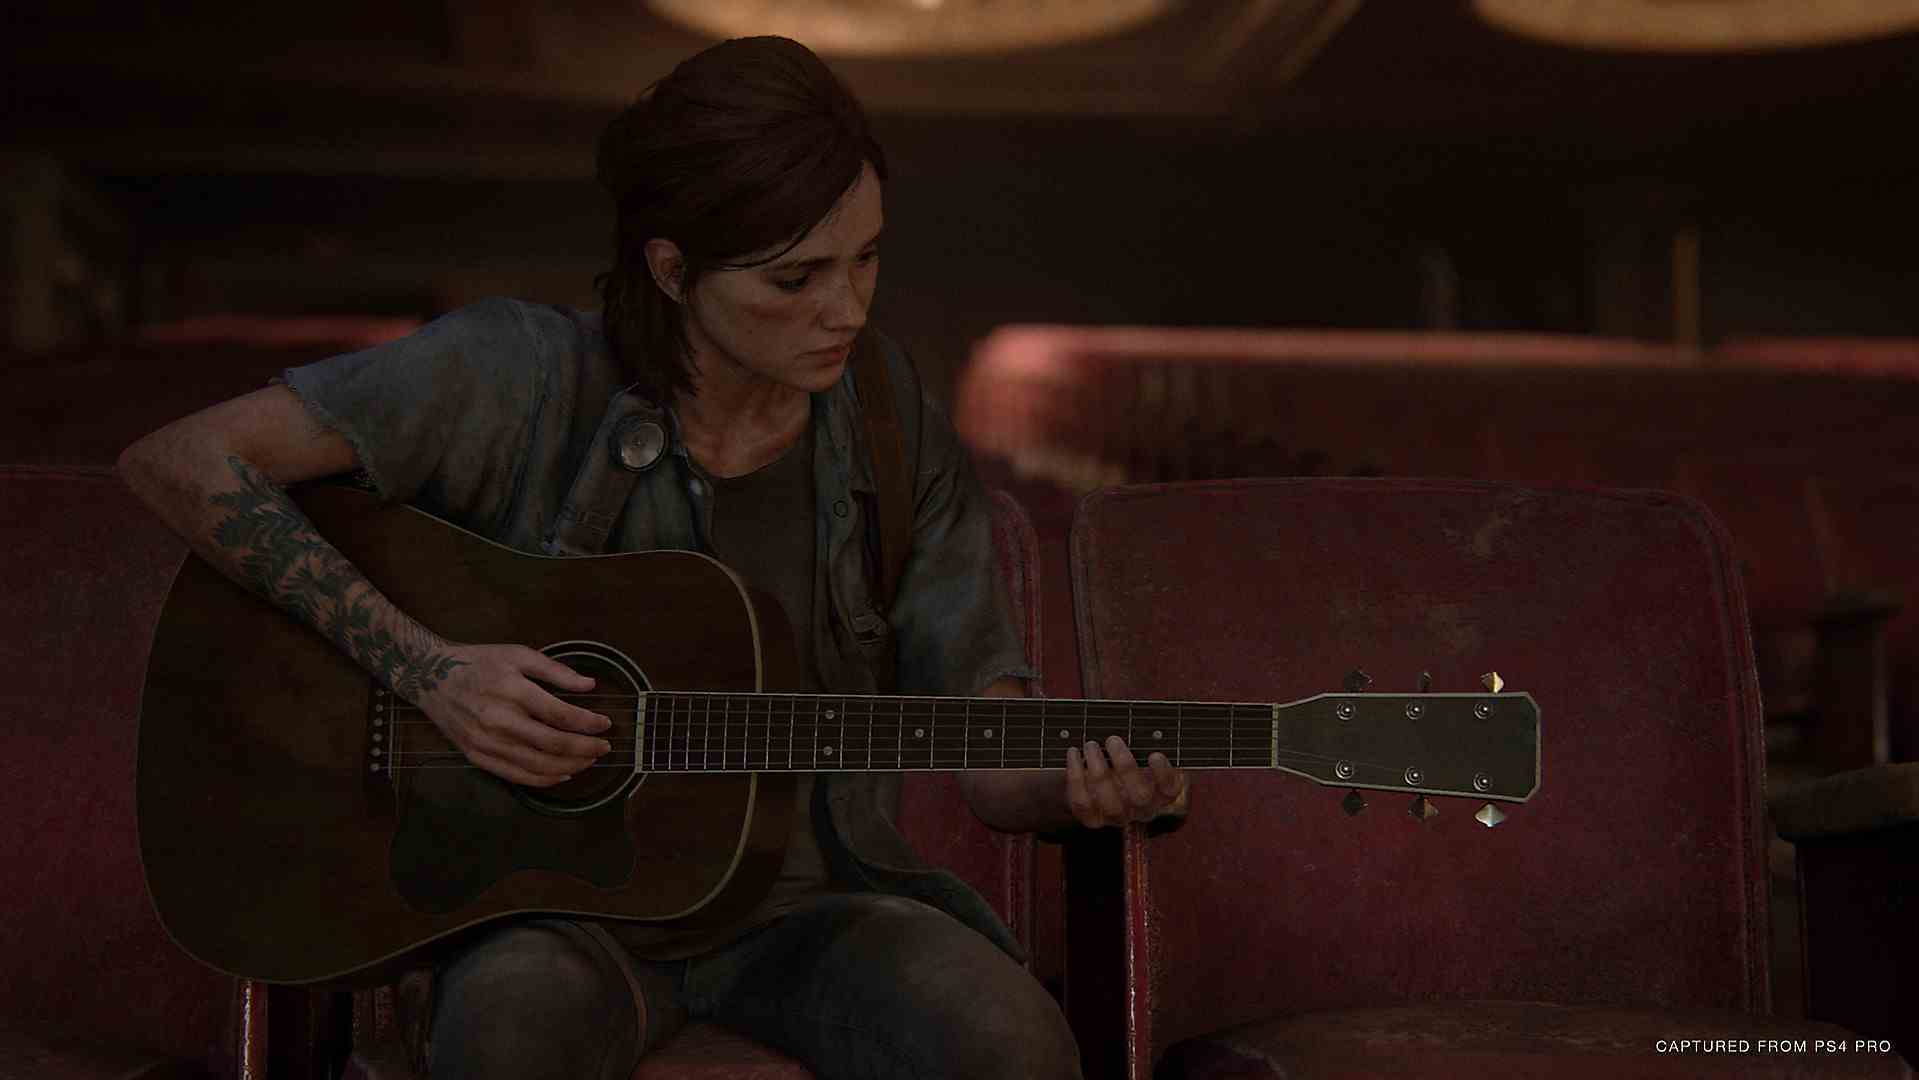 Ellie, The Last of Us Part II ekran görüntüsünde gitar çalıyor